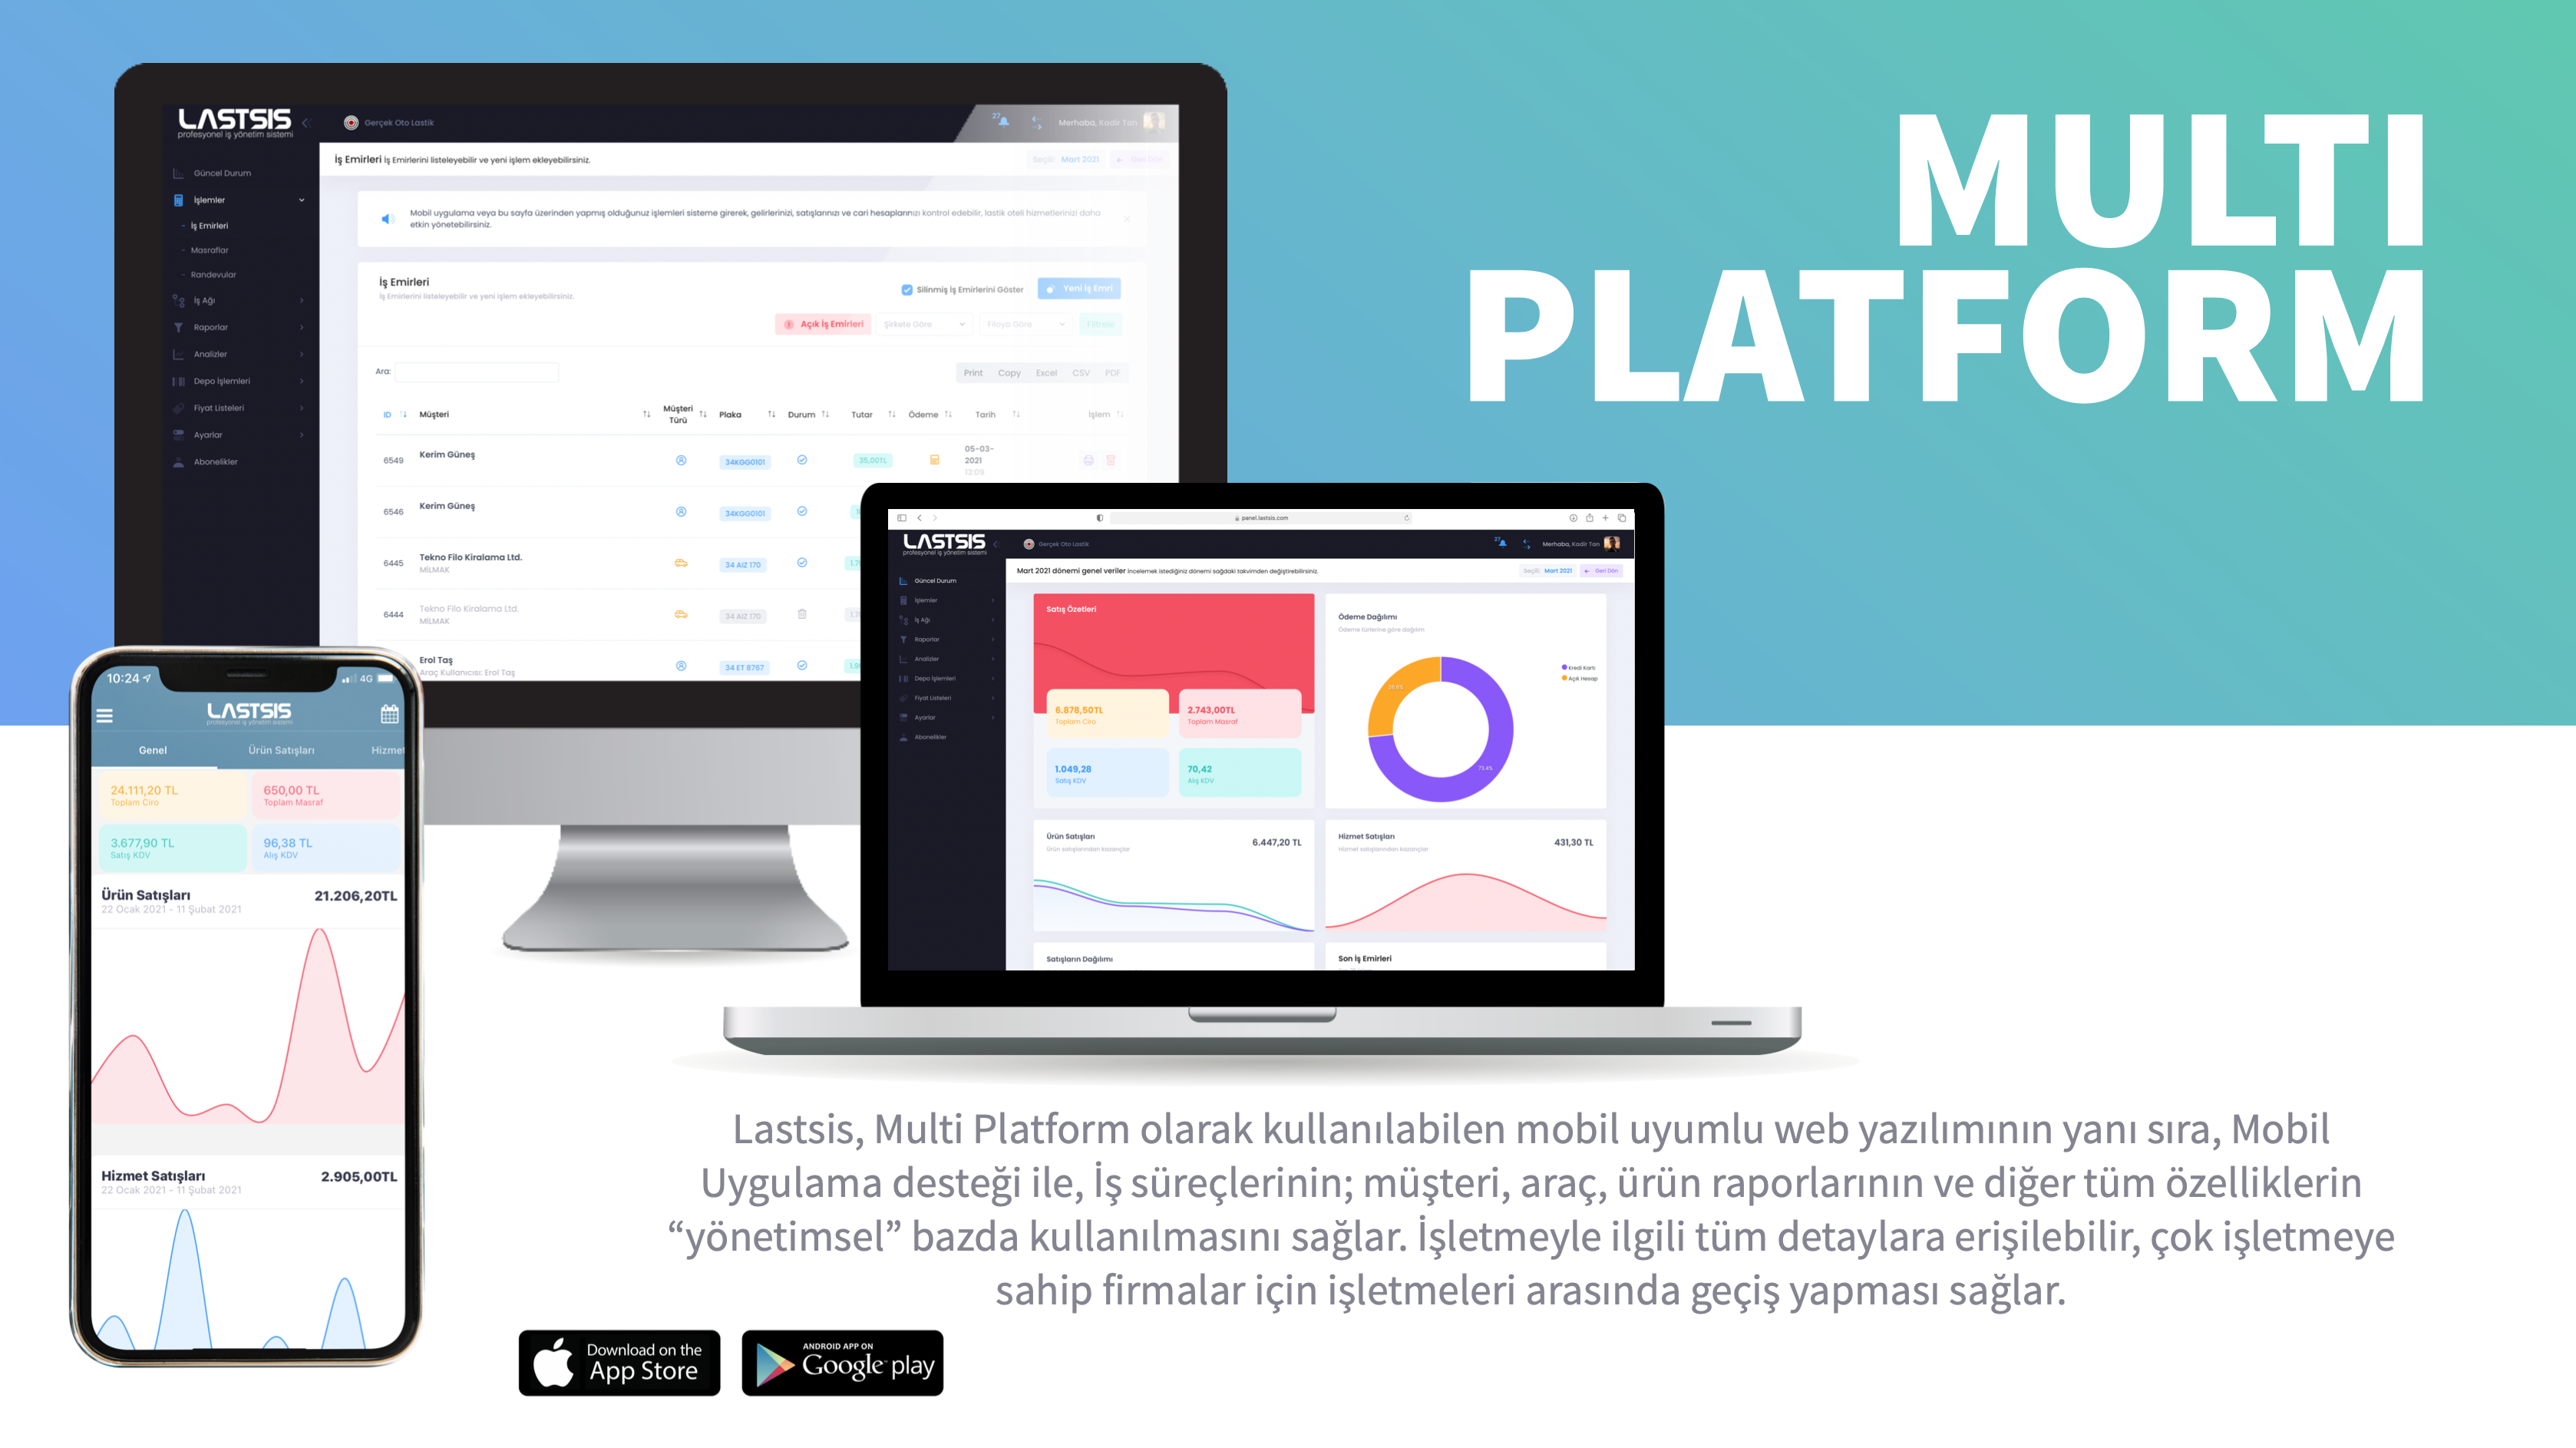 Lastsis Multi Platform